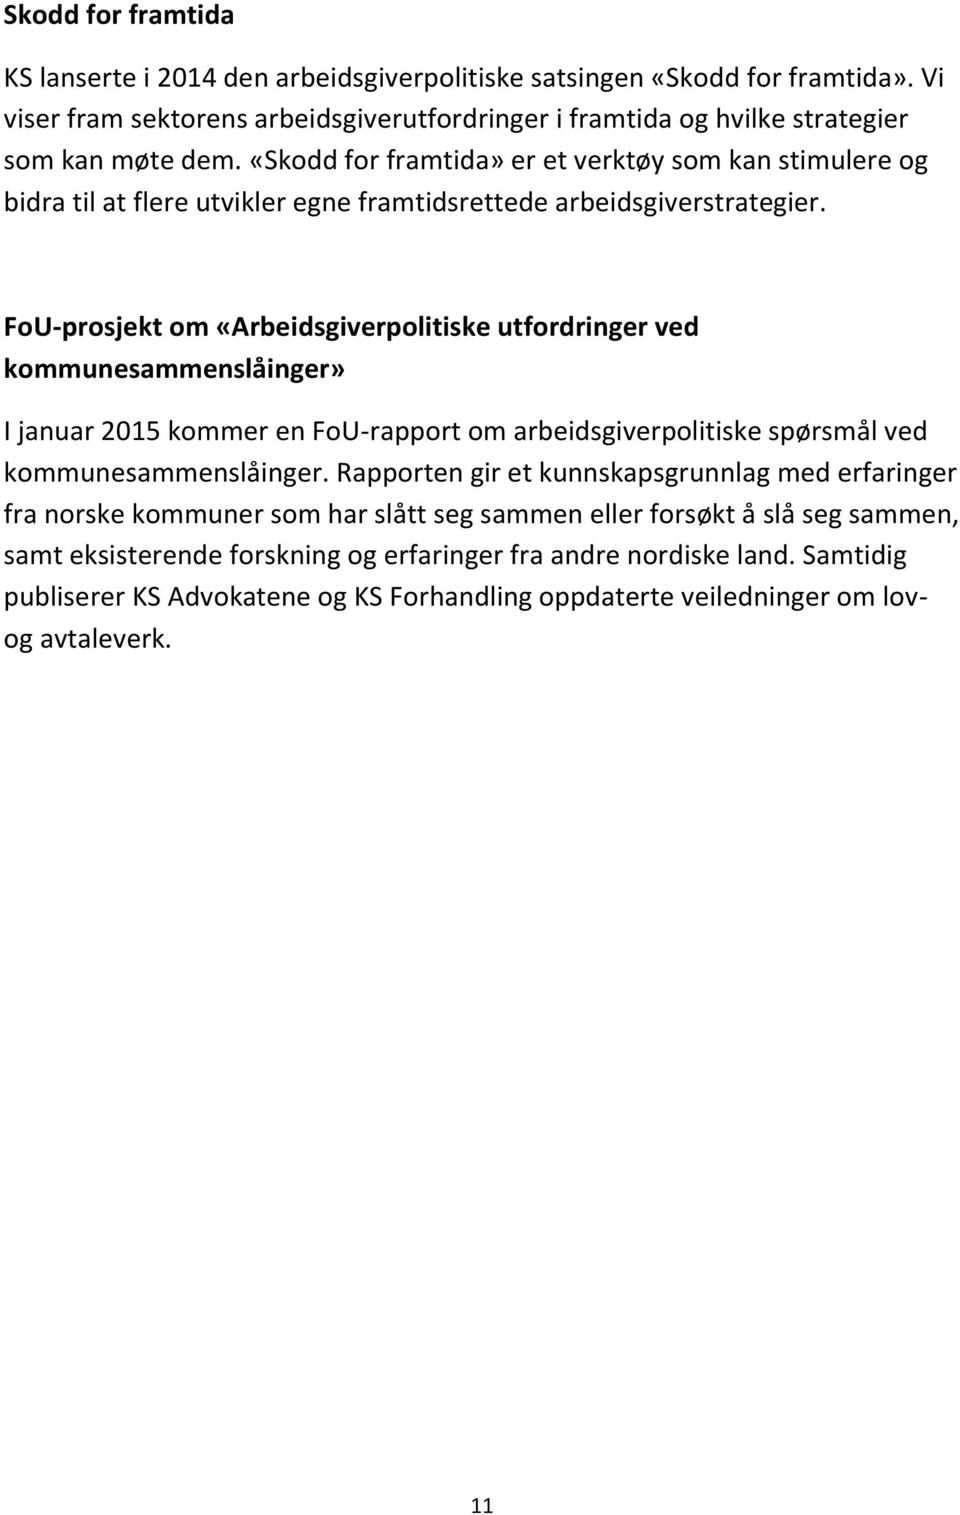 FoU-prosjekt om «Arbeidsgiverpolitiske utfordringer ved kommunesammenslåinger» I januar 2015 kommer en FoU-rapport om arbeidsgiverpolitiske spørsmål ved kommunesammenslåinger.